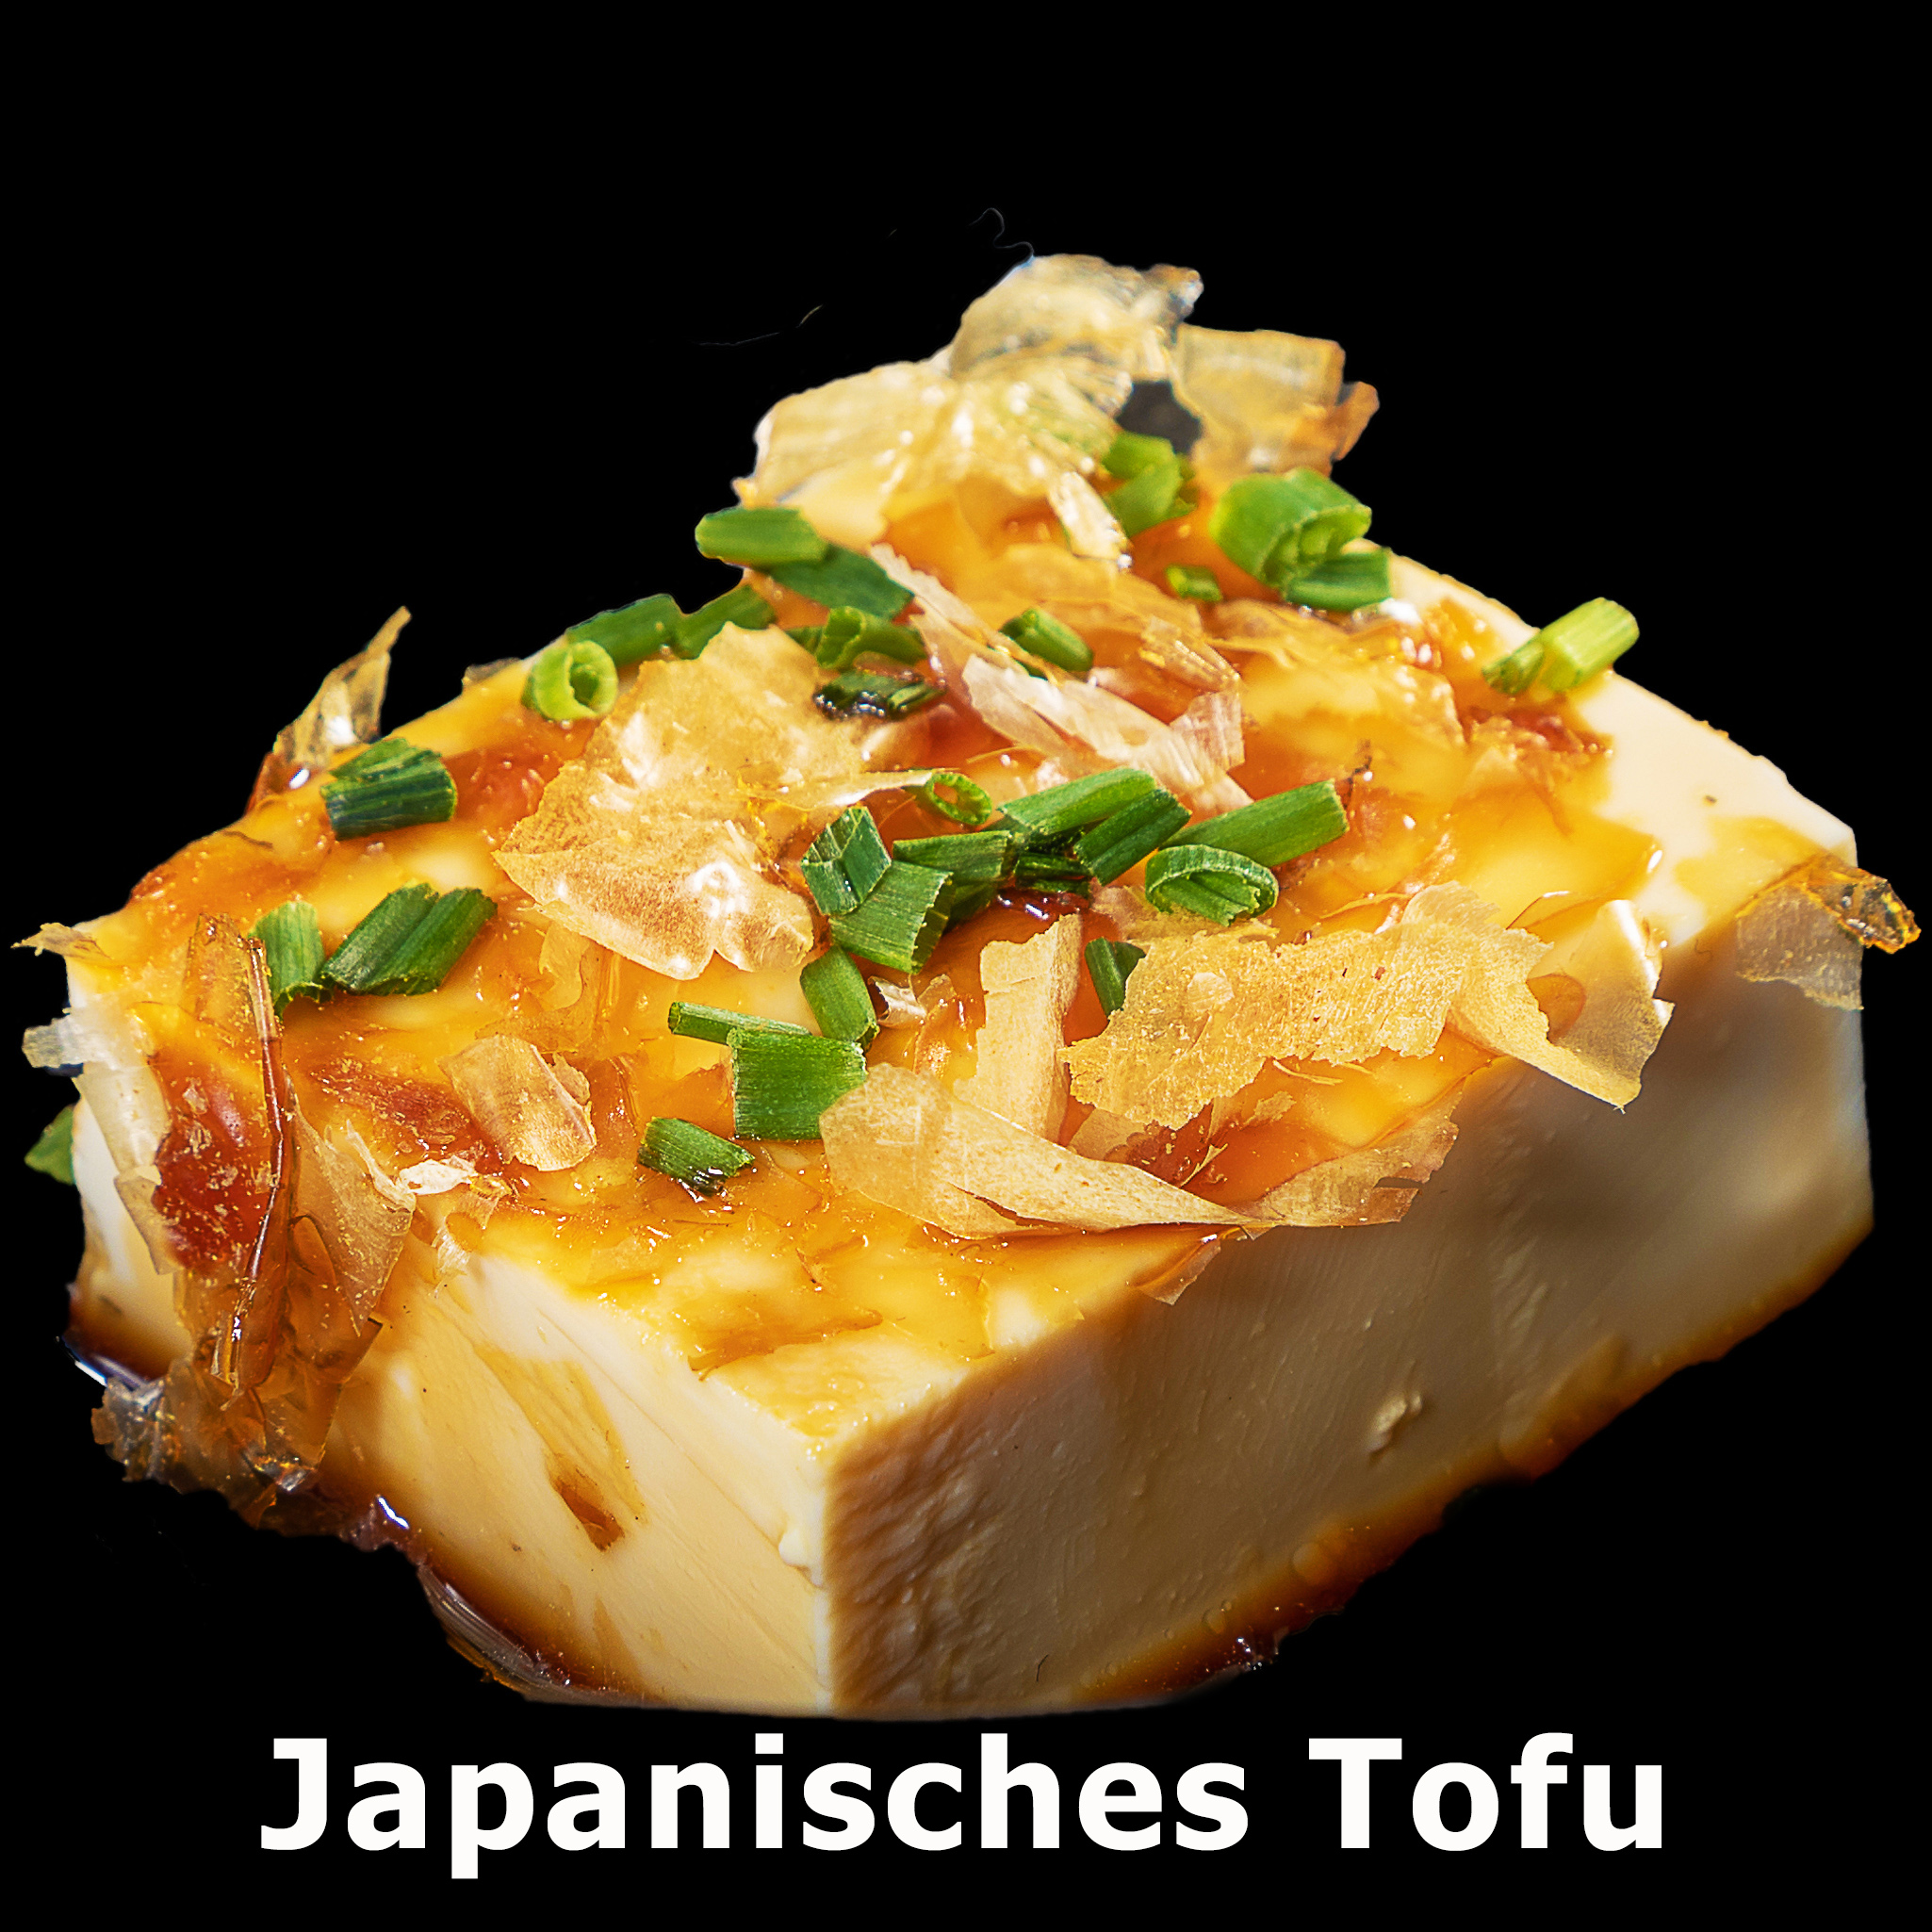 10. Japanisches Tofu